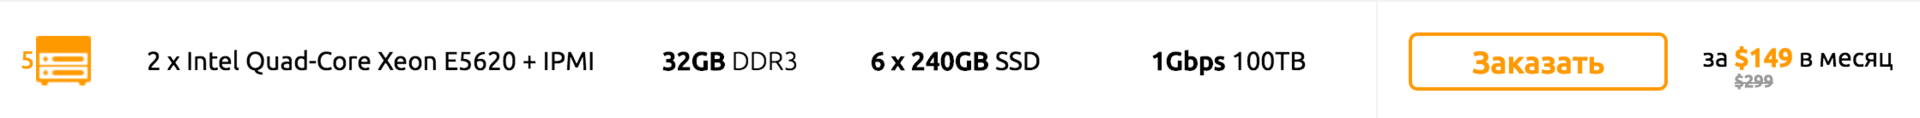 Особенности выбора твердотельных накопителей (SSD) для серверов и RAID-массивов - 6